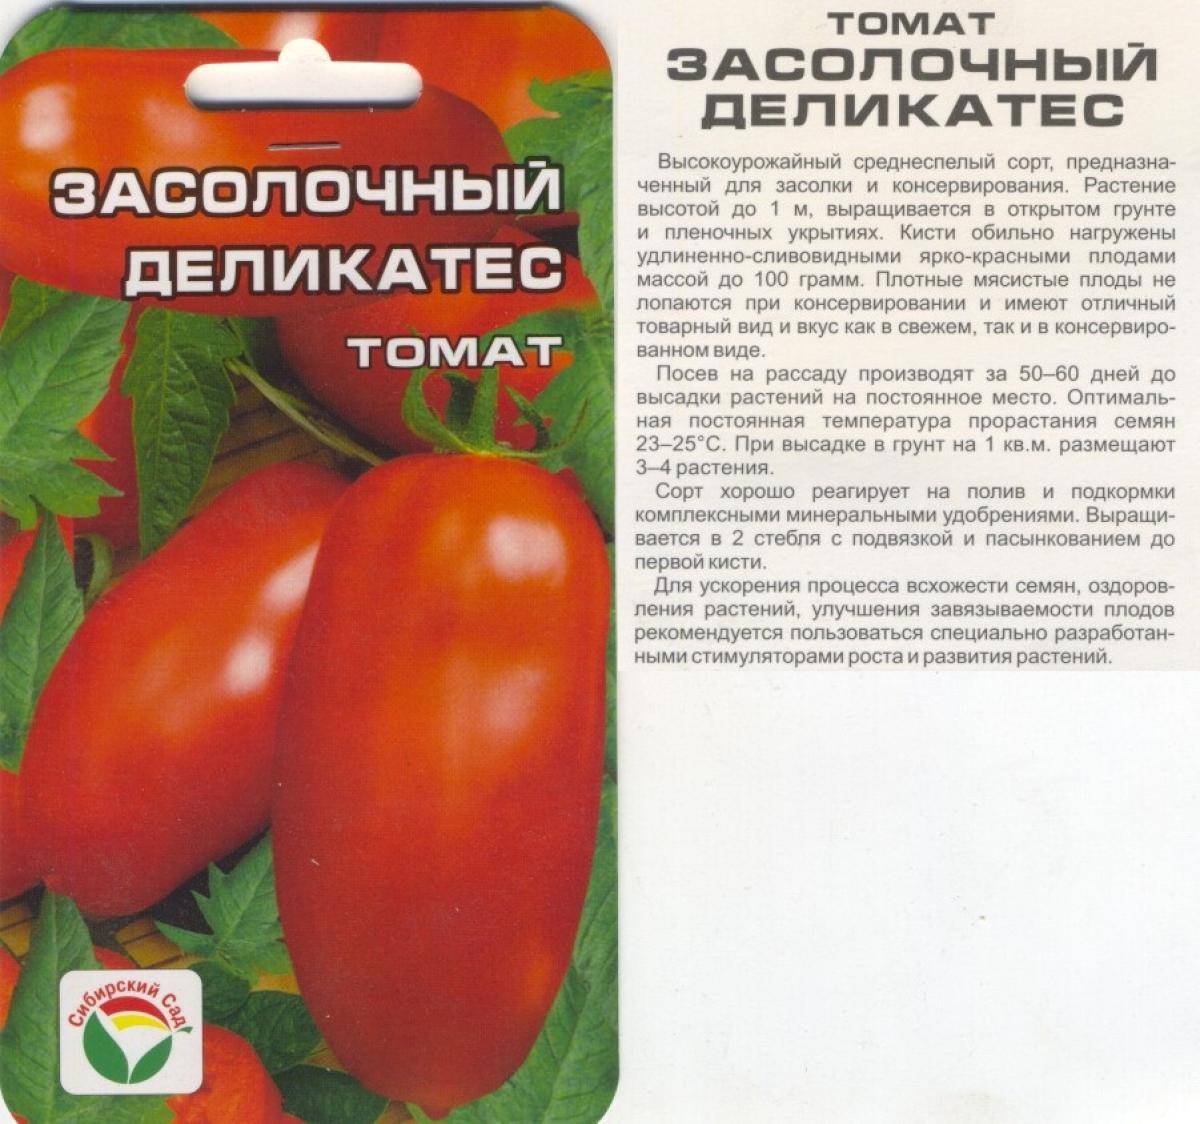 Томат земляк: характеристика и описание сорта, отзывы тех кто сажал помидоры об их урожайности, видео и фото семян